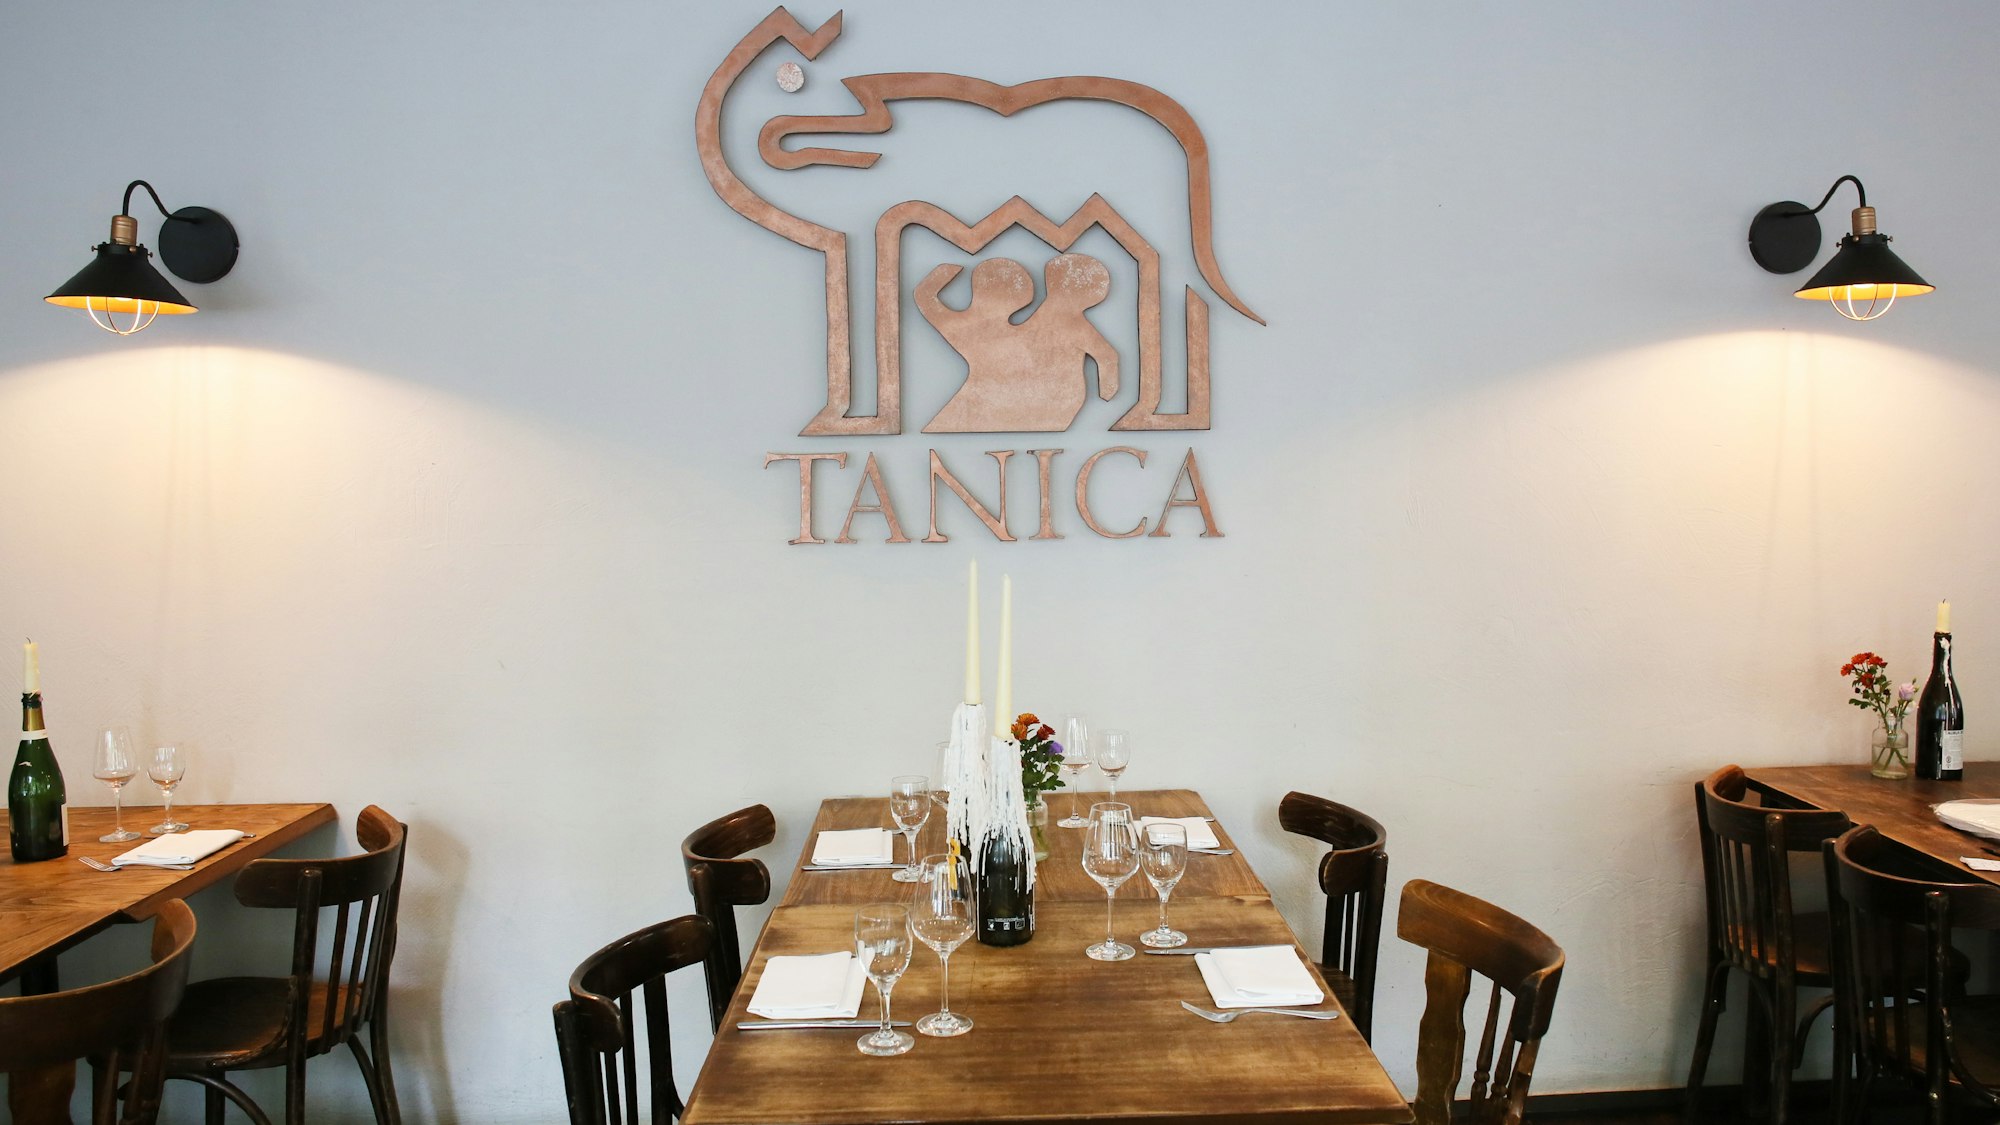 Das Tanica ist mit einladenden Holzmöbeln und Kerzen eingerichtet.